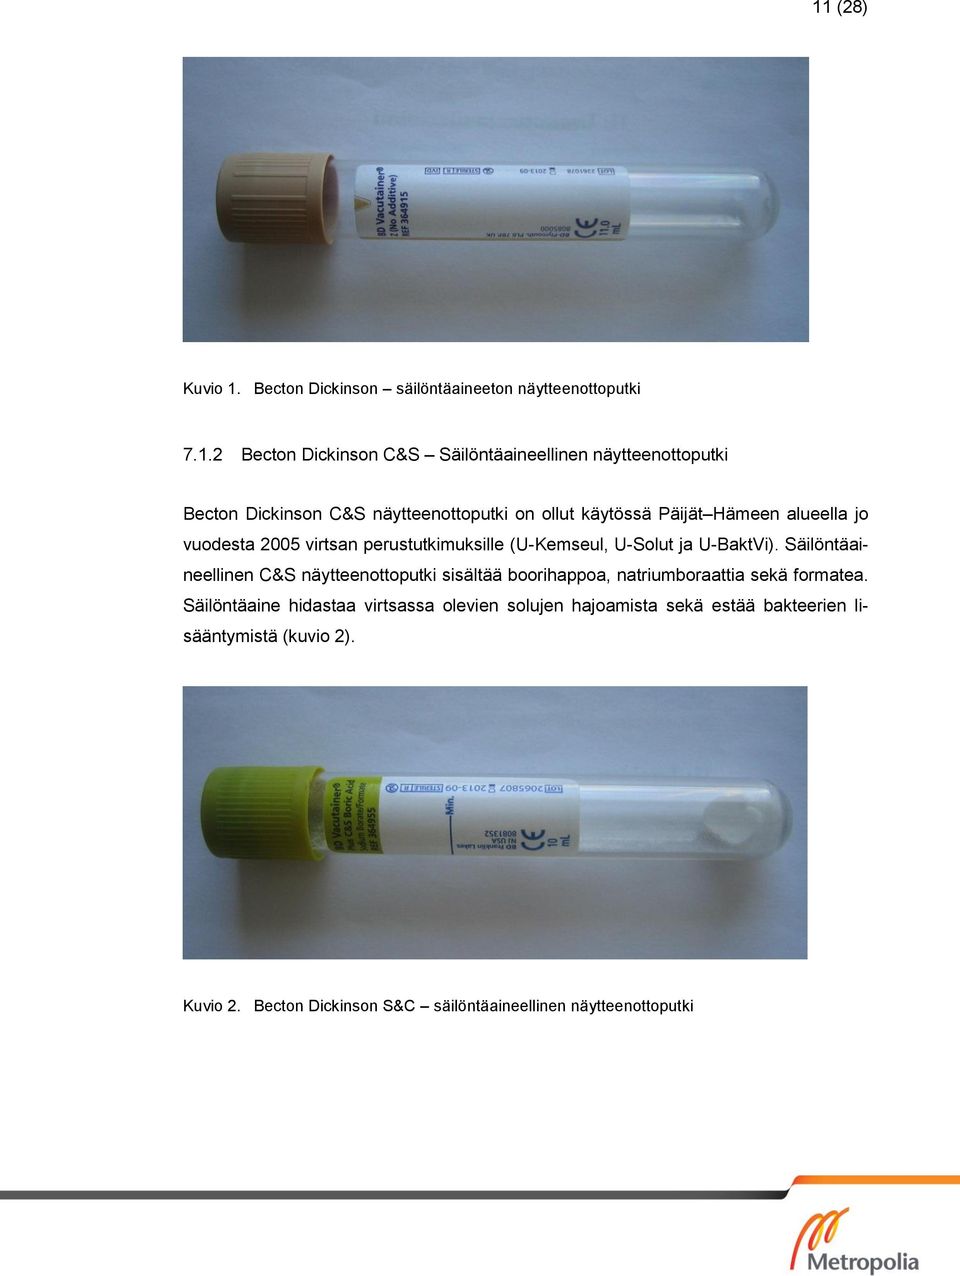 U-BaktVi). Säilöntäaineellinen C&S näytteenottoputki sisältää boorihappoa, natriumboraattia sekä formatea.